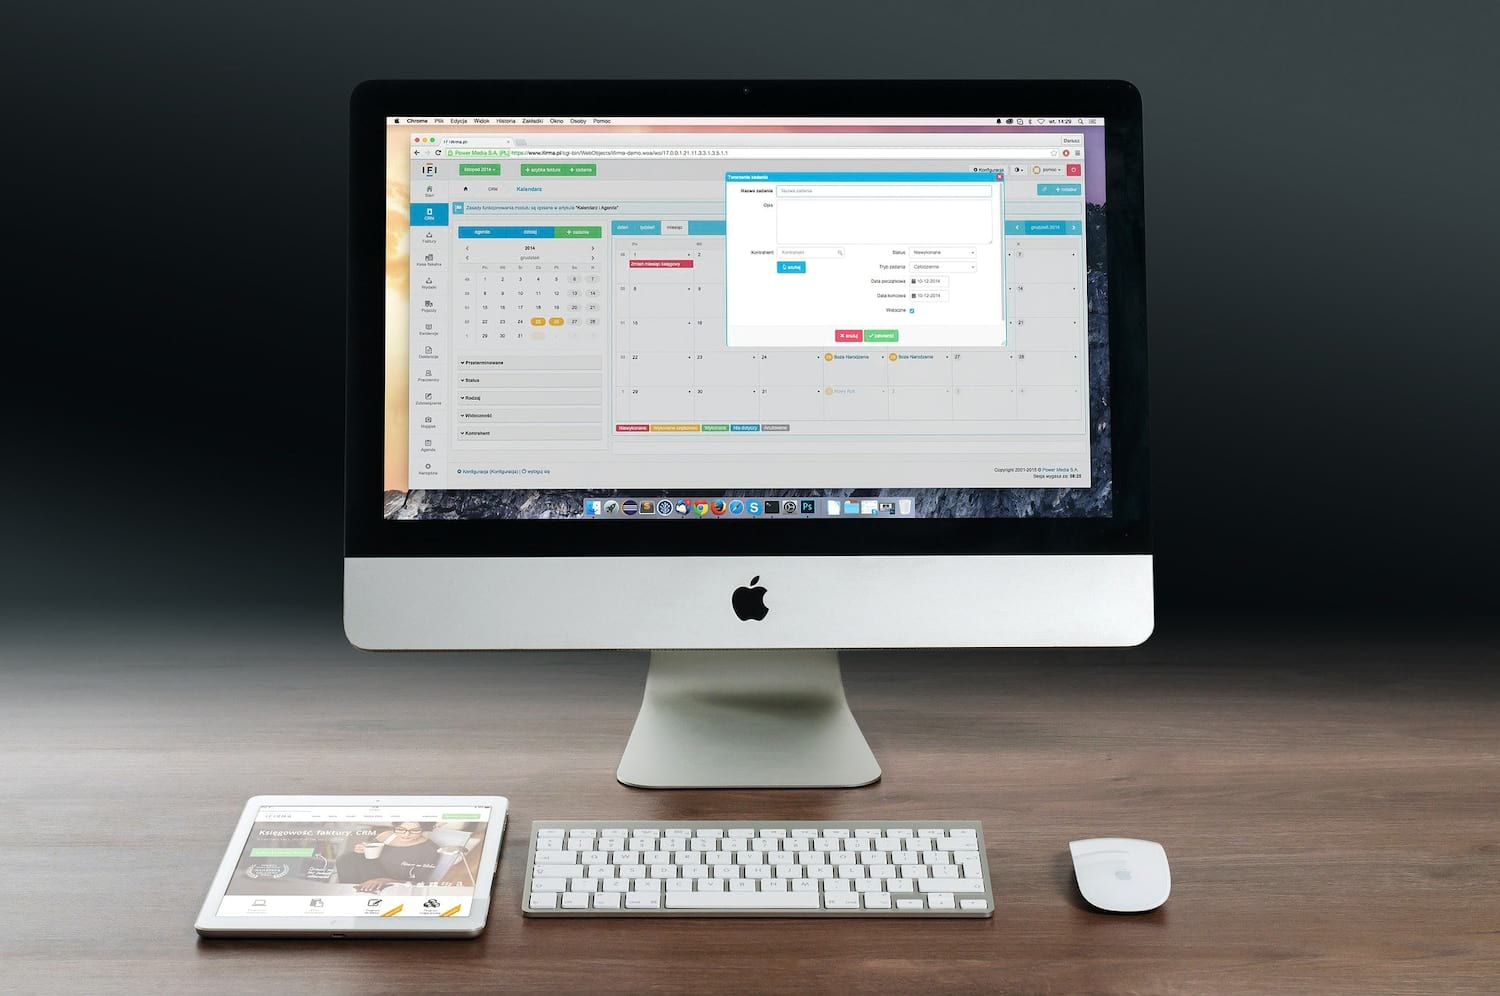 display for mac mini 2013